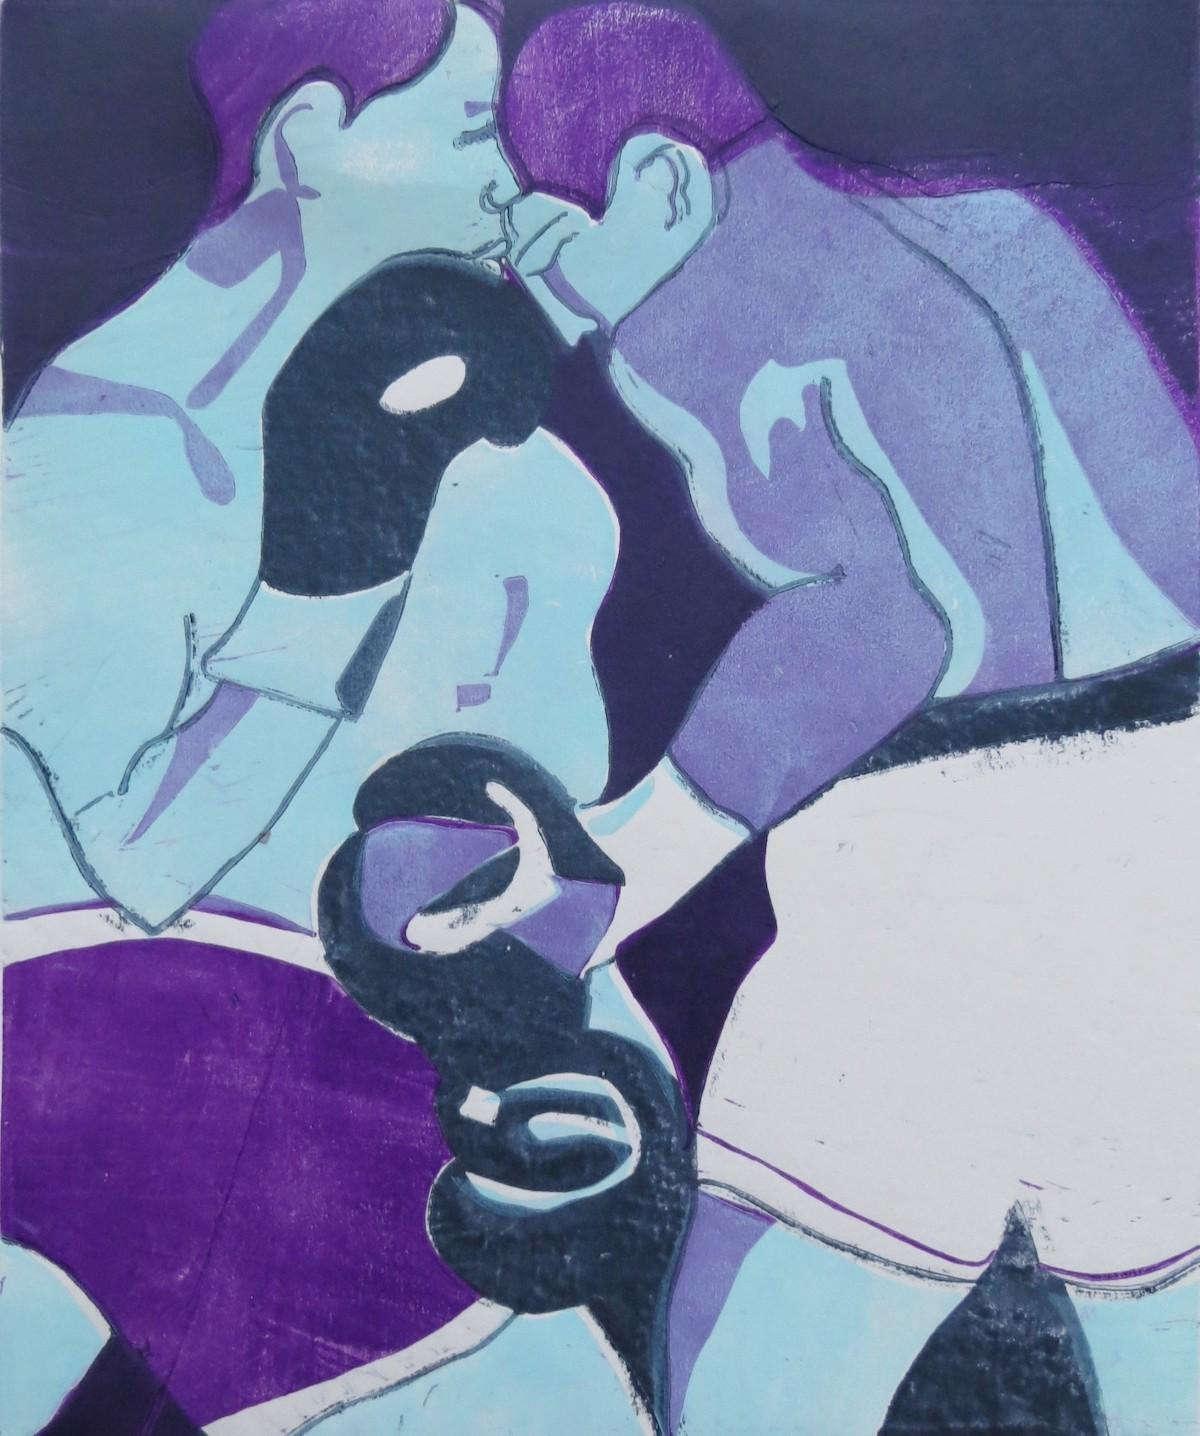 In the Ring (Violett) von Lisa Takahashi
Limitierte Auflage und vom Künstler handsigniert 
Ungerahmt verkauft 
Bildgröße: H:40cm x B:30cm
Komplette Größe des ungerahmten Werks: H:40cm x B:30cm x T:0,1cm 
Bitte beachten Sie, dass die Insitu-Bilder